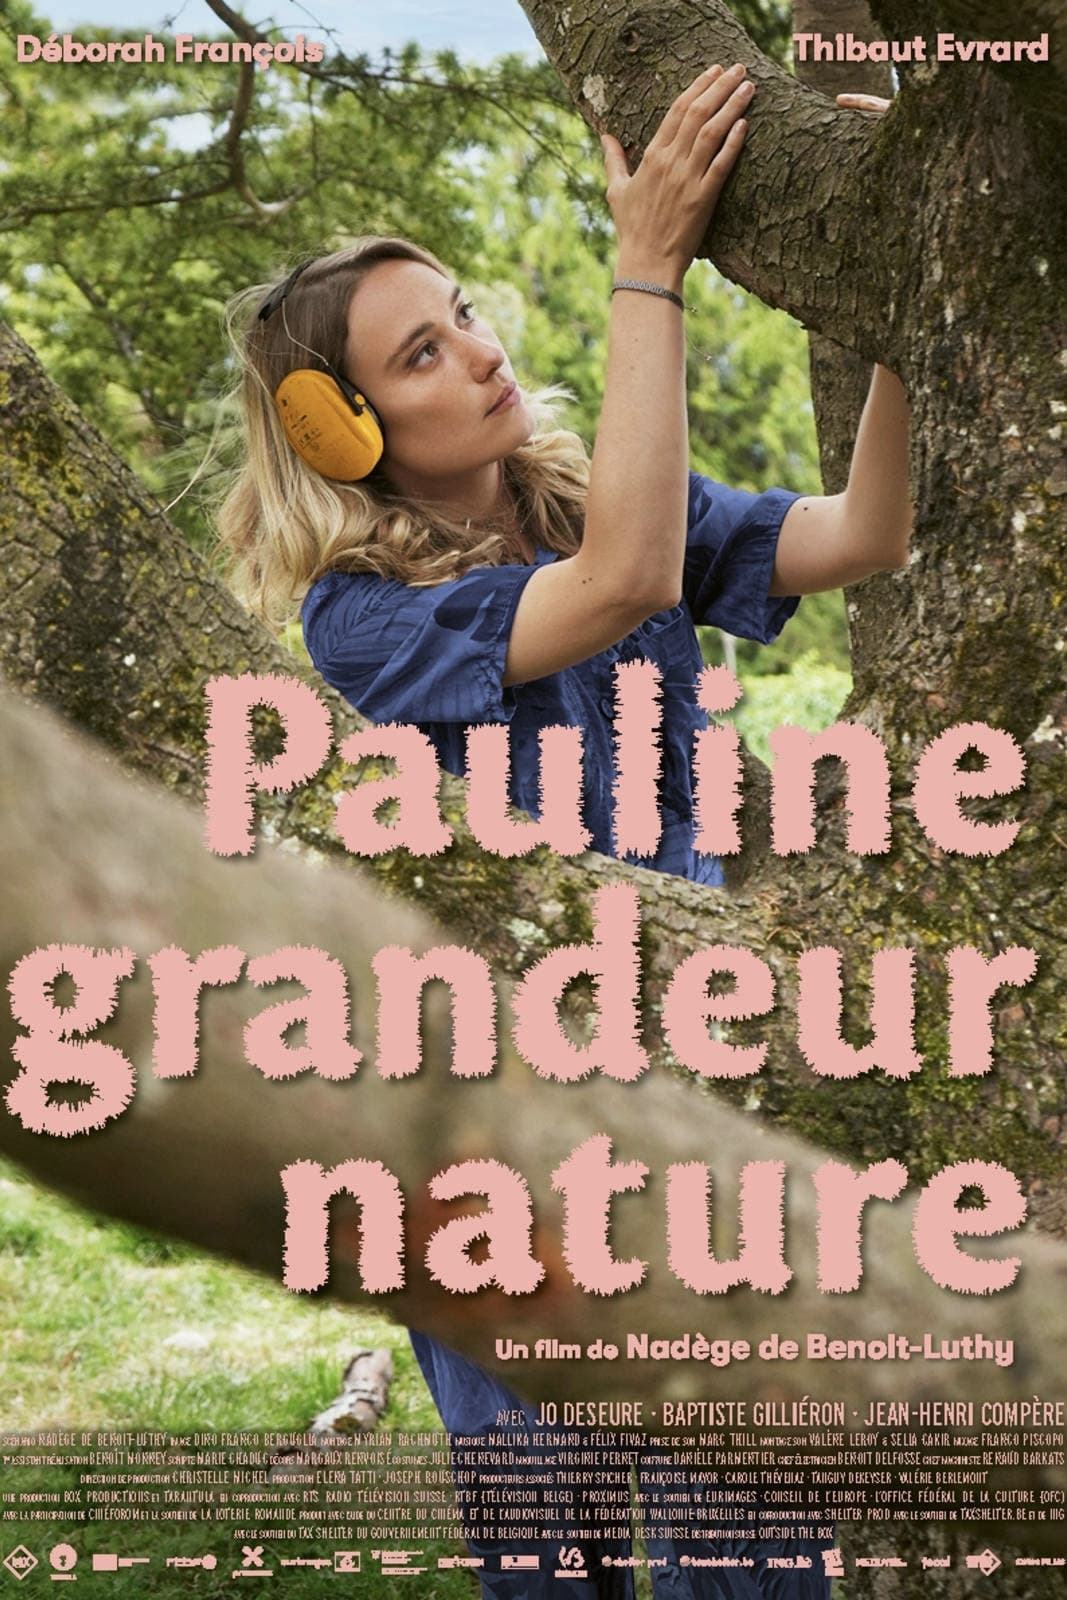 Pauline grandeur nature